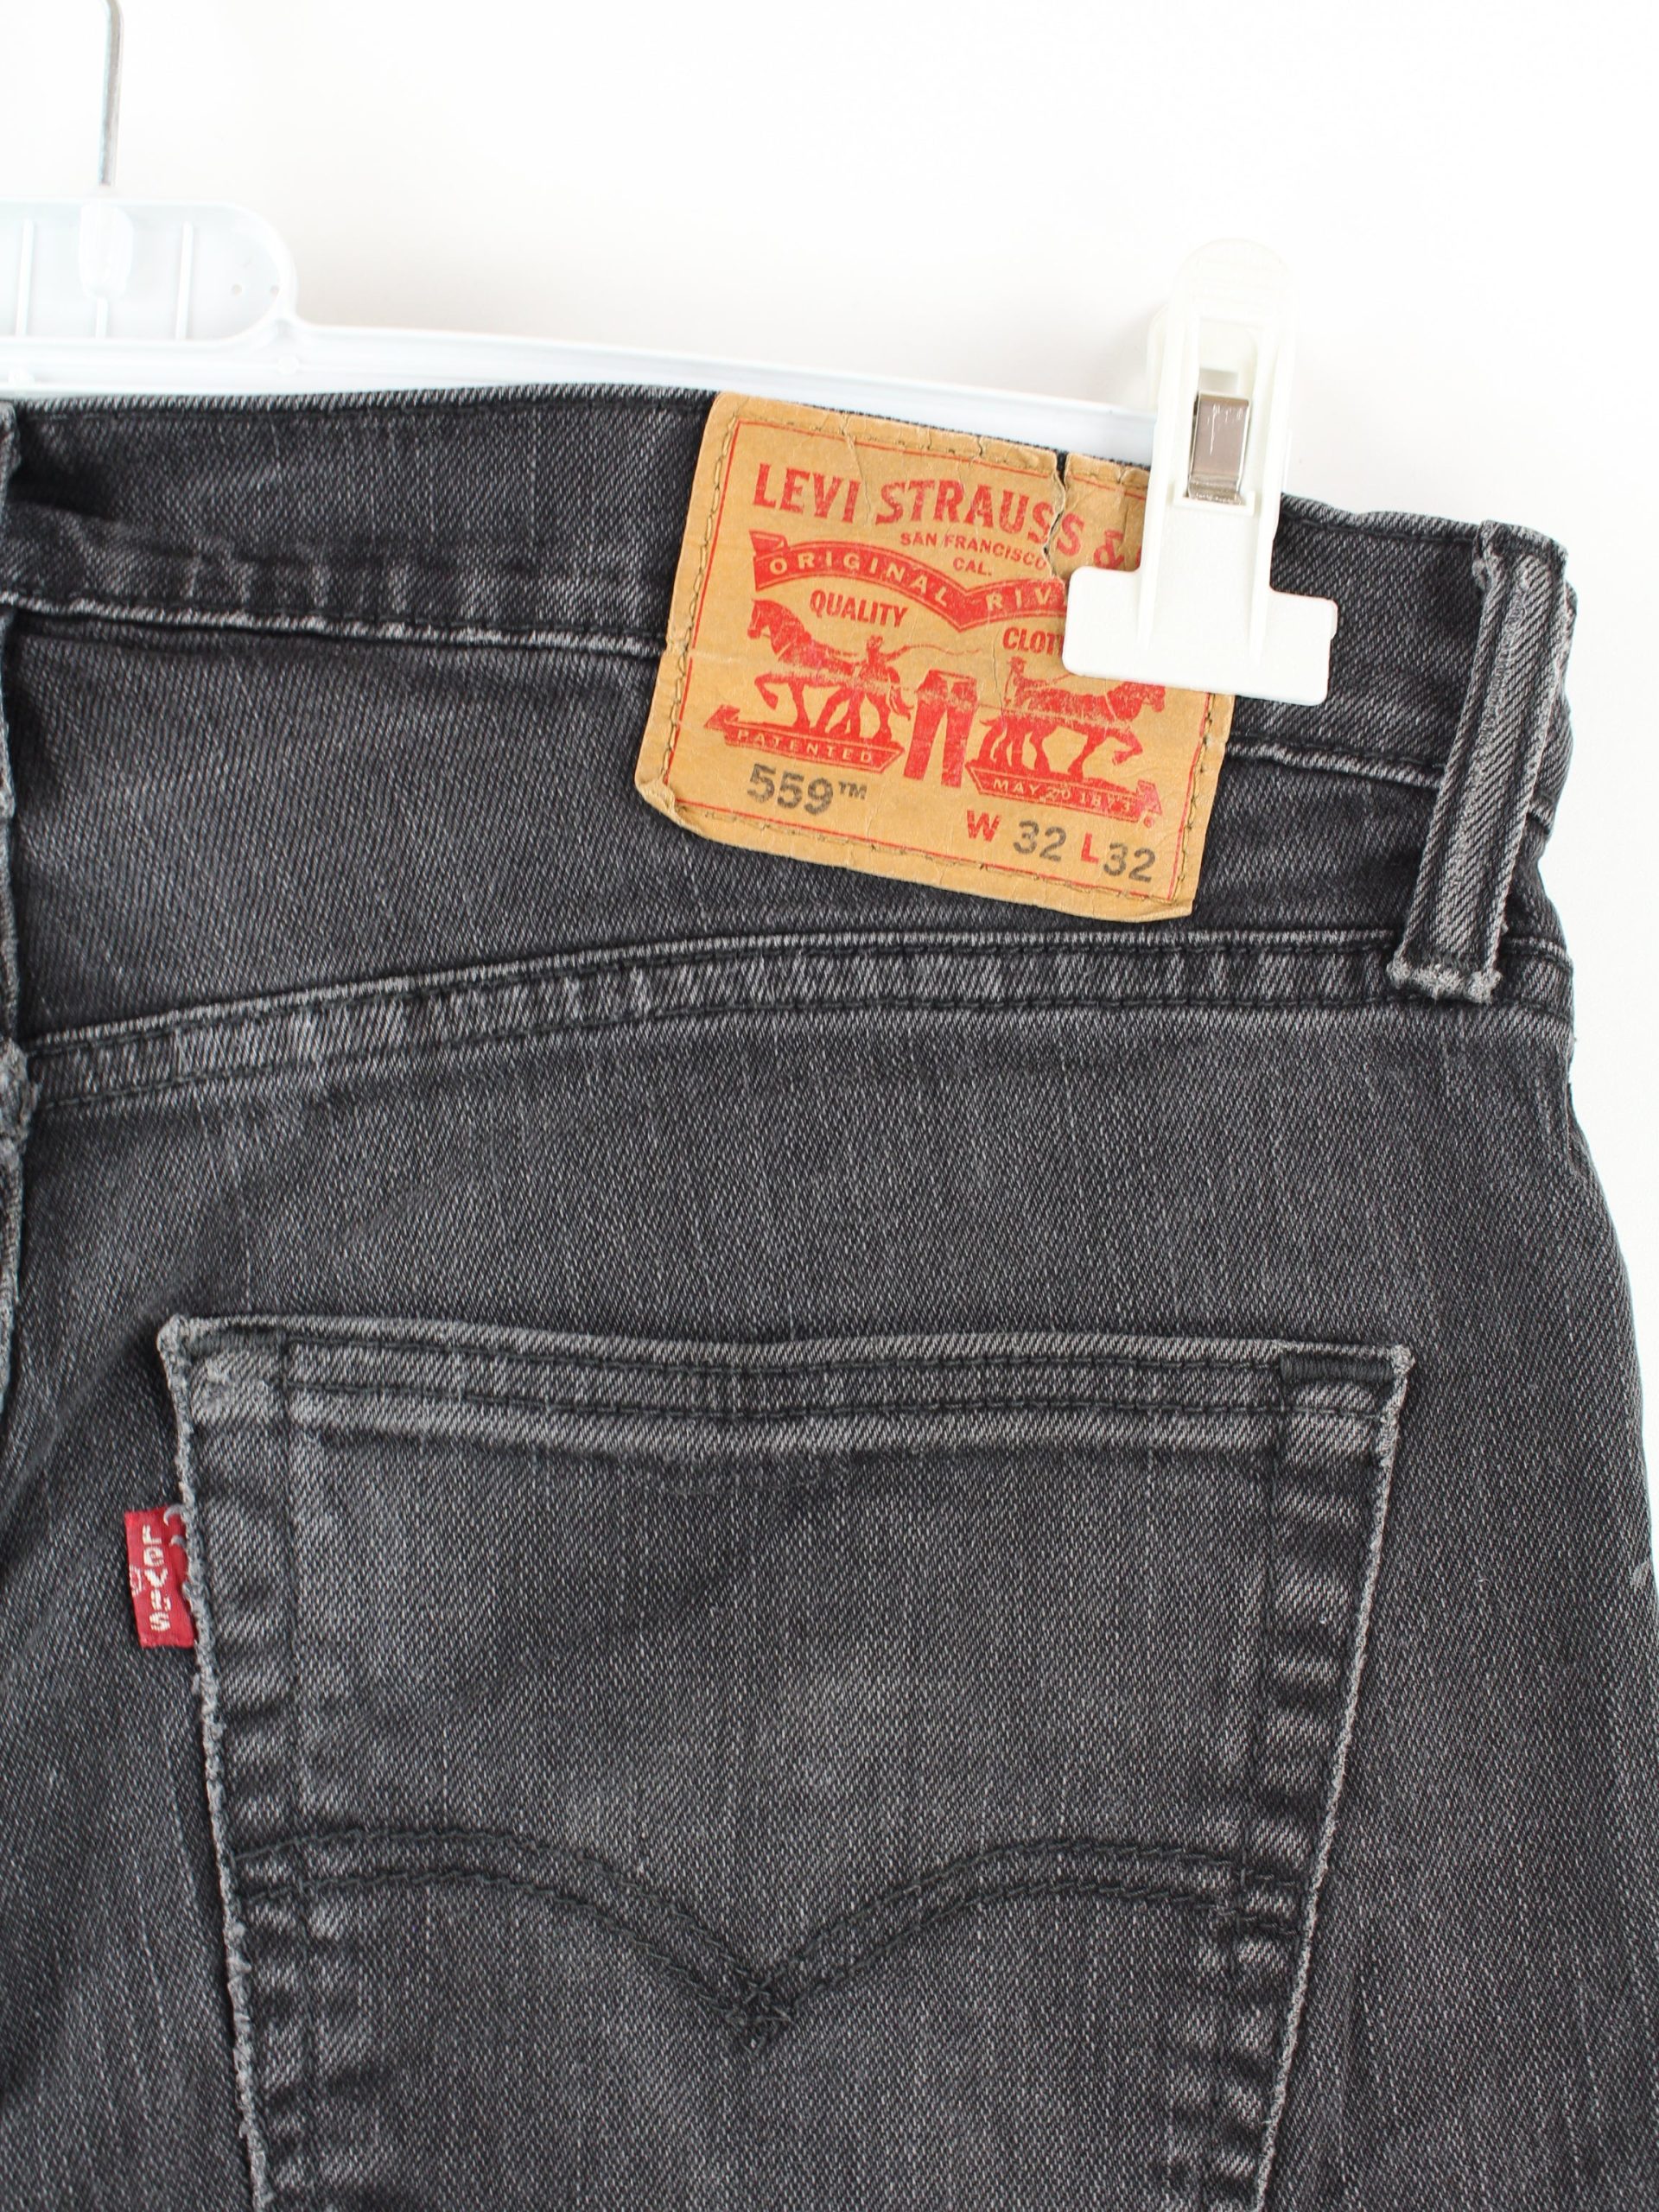 levis 559 jeans 